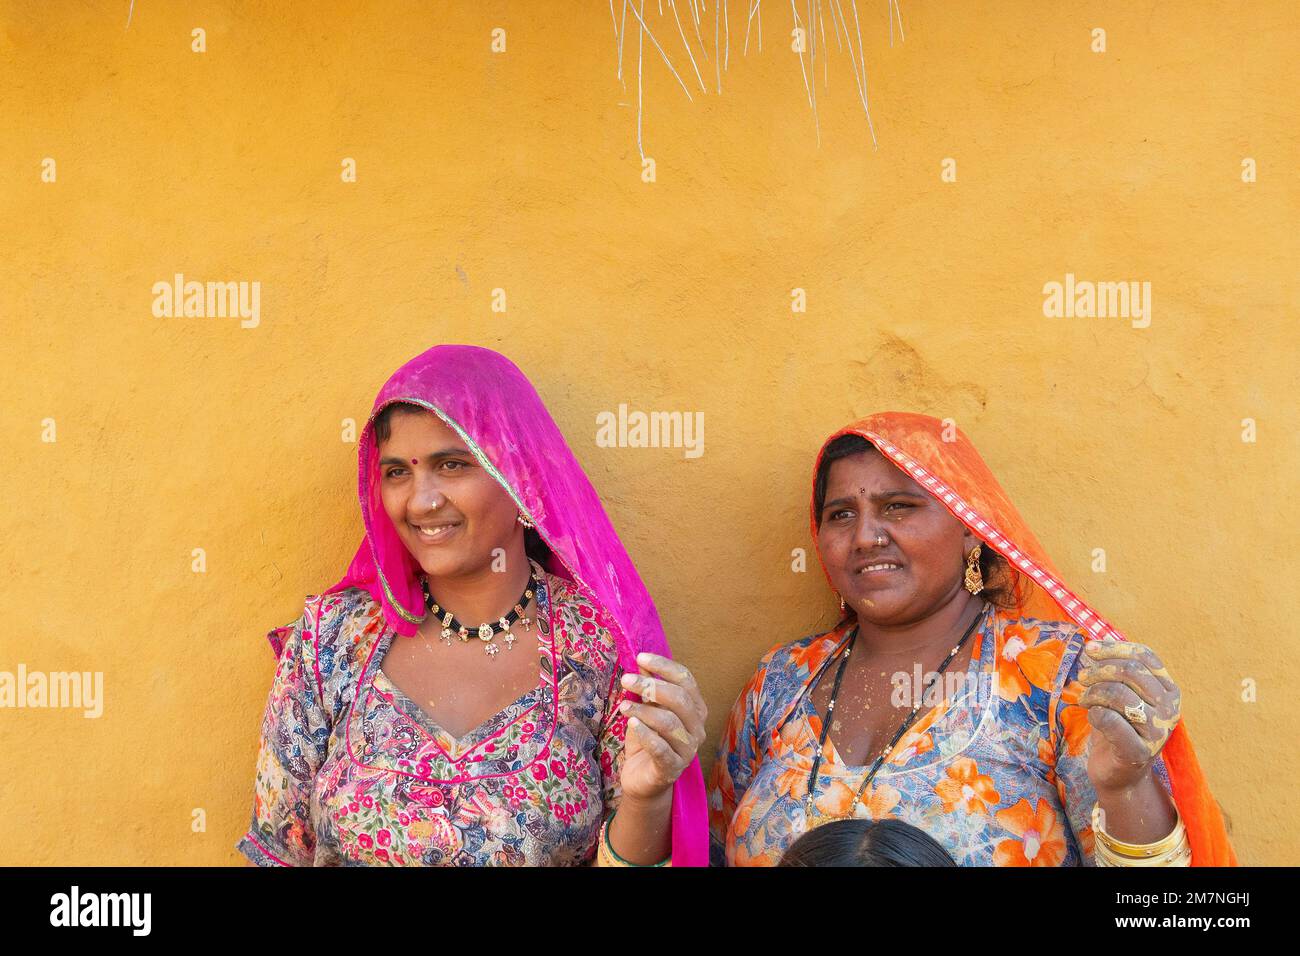 Jaisalmer, Rajasthan, Indien - 15. Oktober 2019 : lächelnde und glückliche Rajasthani-Frauen in lokalen Kostümen, die sich in einem Rajasthani-Dorf posieren. Stockfoto